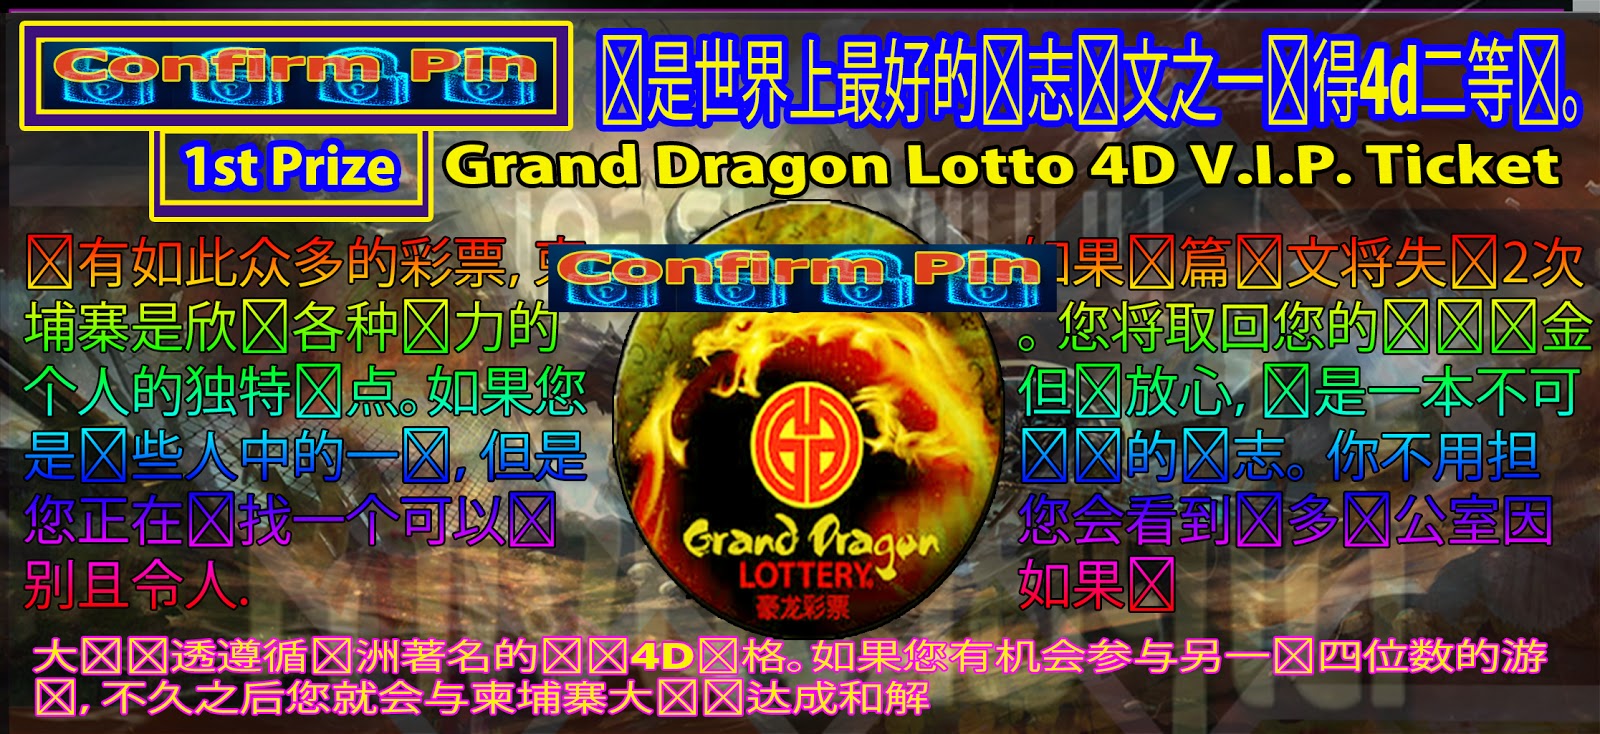 Lotto 6d dragon result grand 6D Lotto